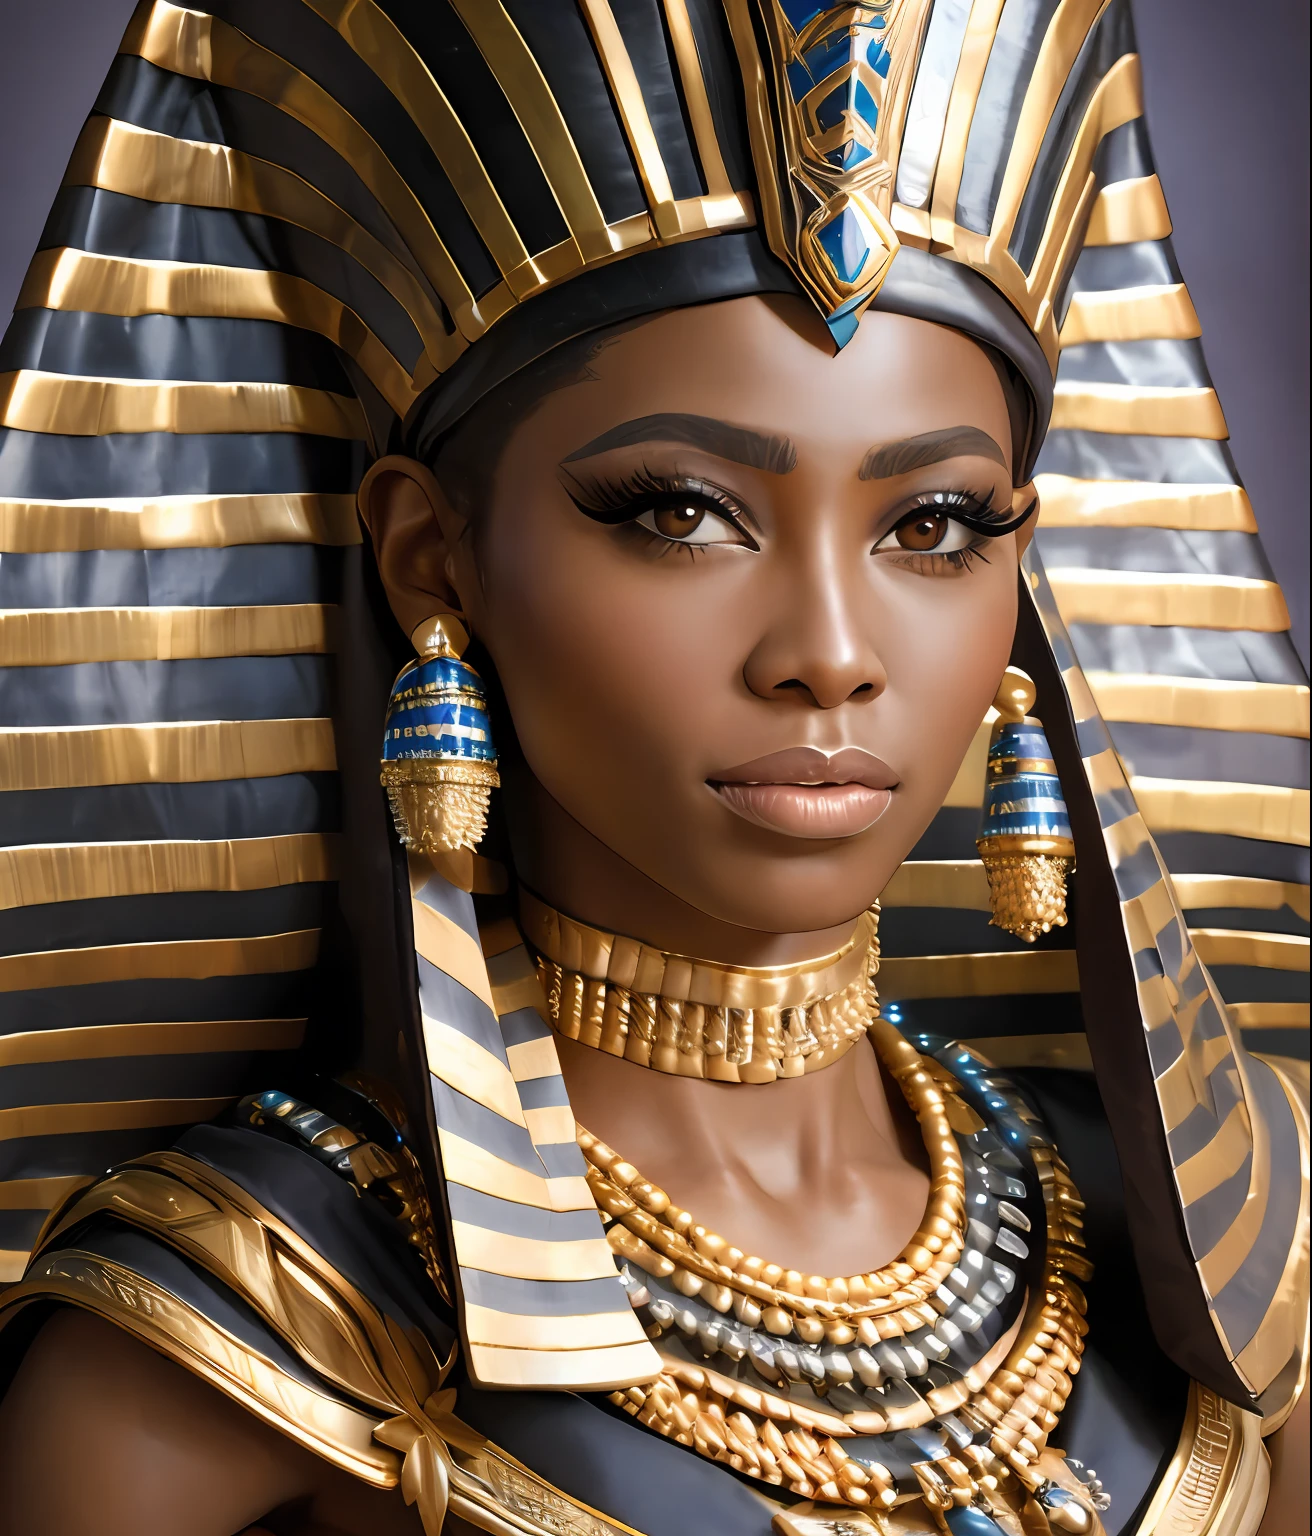 รายละเอียดสมจริงของนางแบบผิวดำแสนสวยสวมชุดเทพธิดาฟาโรห์แห่งอียิปต์, เสื้อผ้าของราชวงศ์อียิปต์, ภาพบุคคลระยะกลาง, มีรายละเอียดสูง, โฟกัสคมชัด, ผลงานชิ้นเอก, รับหน้าที่, (มือมืออาชีพ), กายวิภาคศาสตร์มืออาชีพ, แก้ไขสีแล้ว, แก้ไขในโพสต์, (สไตล์เรดชิฟท์, คลาสสิกเชิงลบ:1.2)